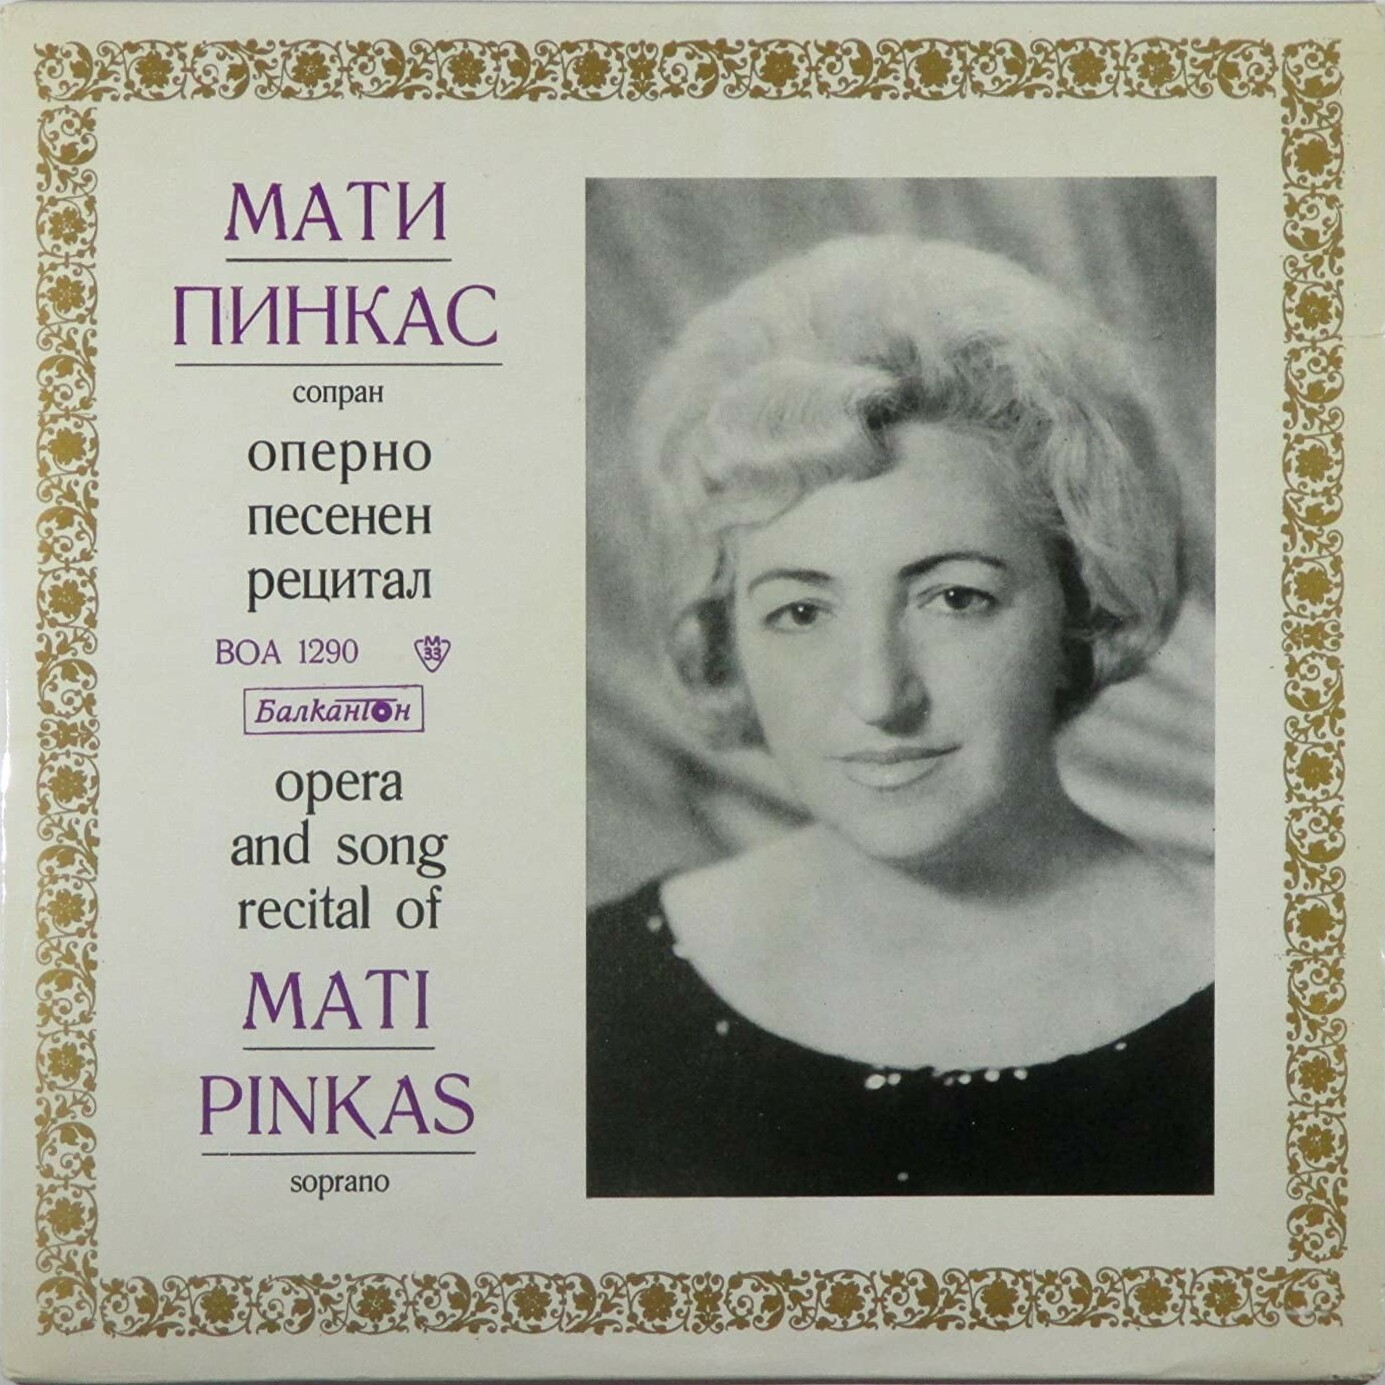 Оперно-песенен рецитал на Мати Пинкас - сопран